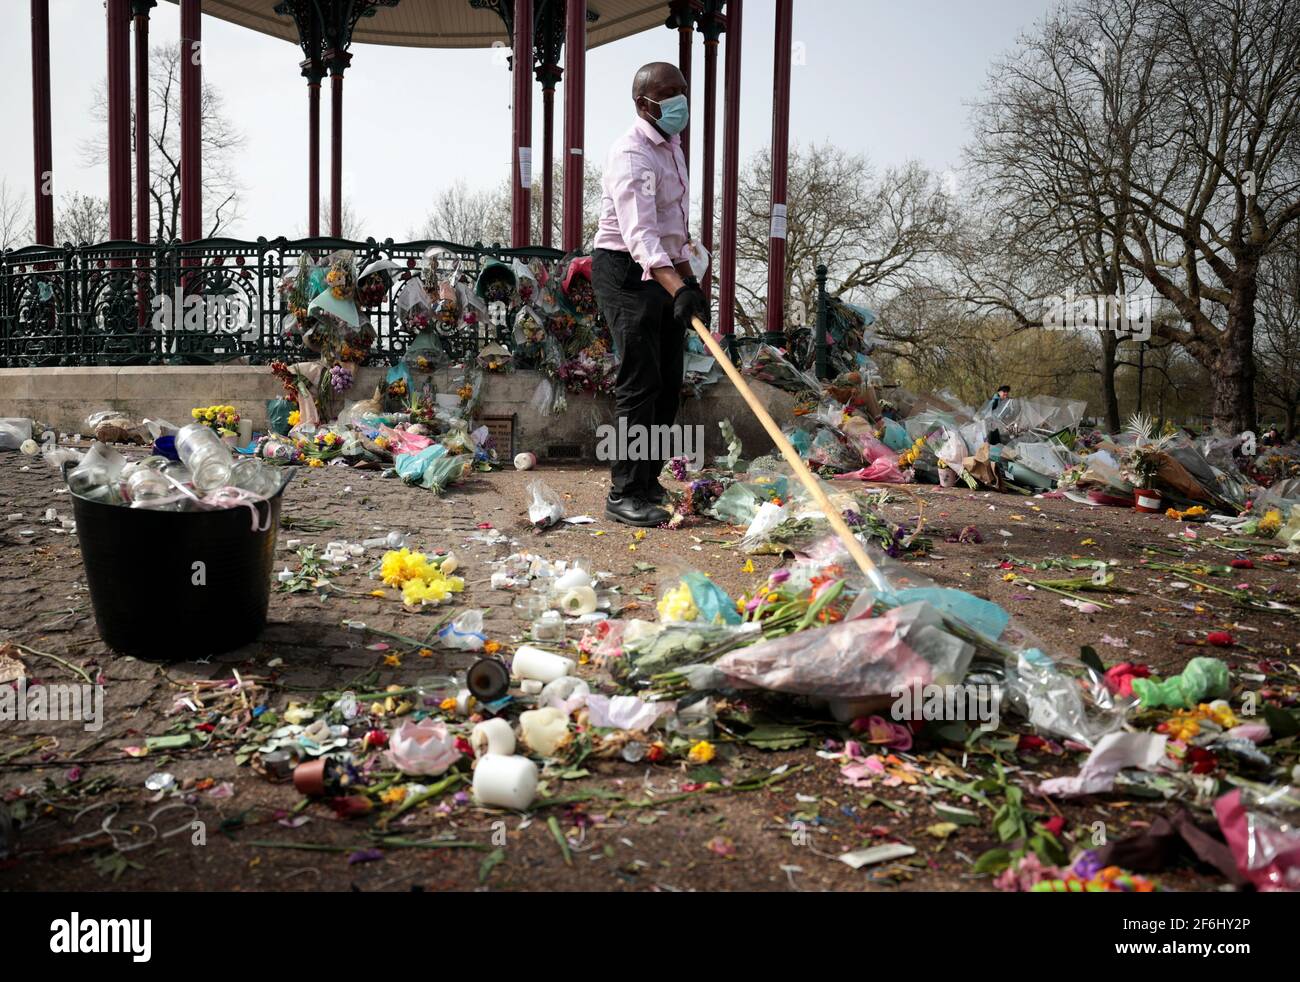 Un employé du conseil remet des hommages floraux à un mémorial de fortune pour la Sarah Everard assassinée du kiosque à musique Clapham Common Bandstand à Londres, en Grande-Bretagne, le 1er avril 2021. REUTERS/Hannah McKay Banque D'Images